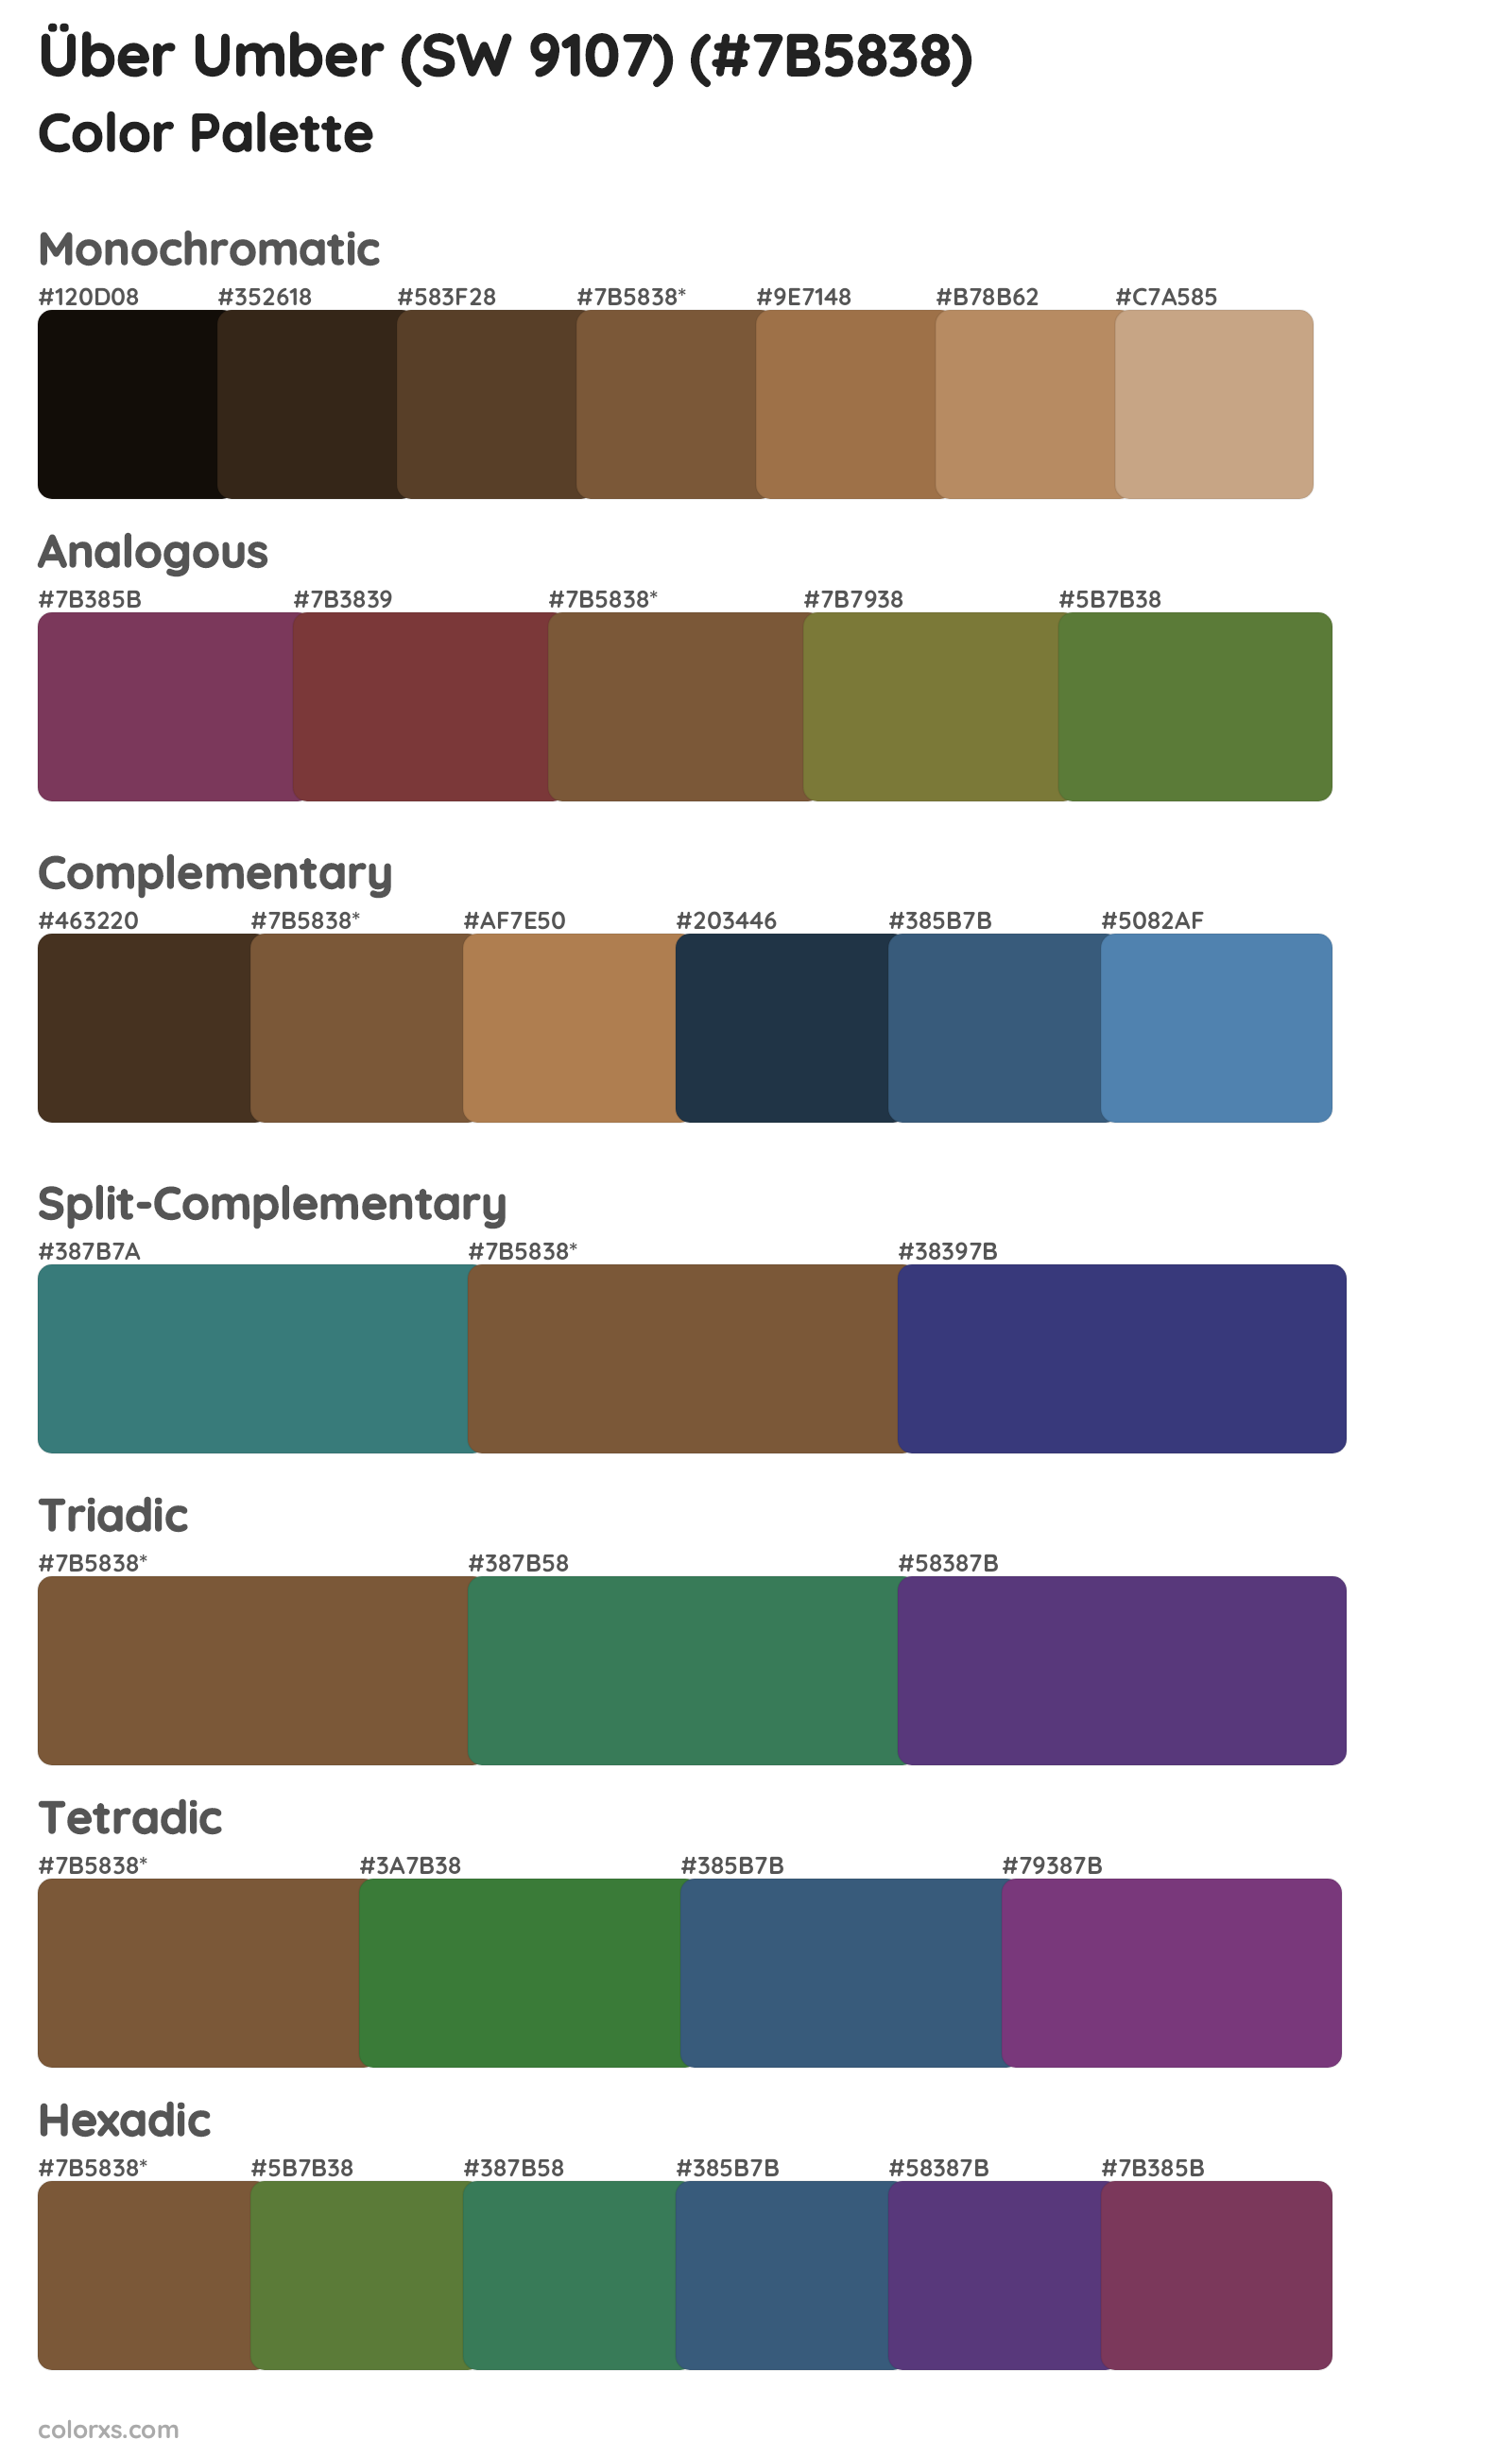 Über Umber (SW 9107) Color Scheme Palettes